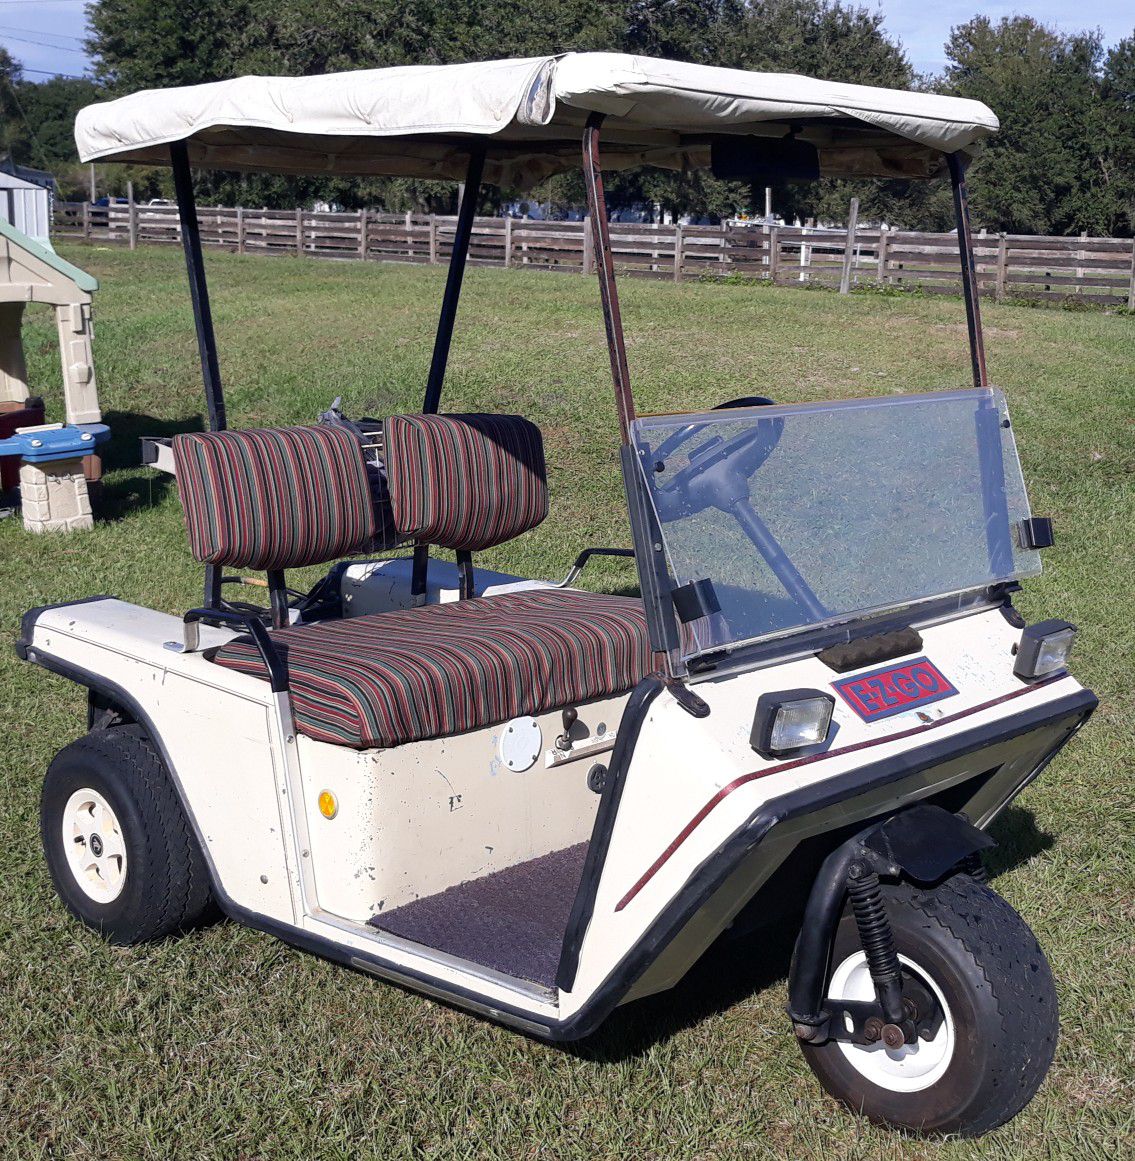 3 wheel EZGO golf cart